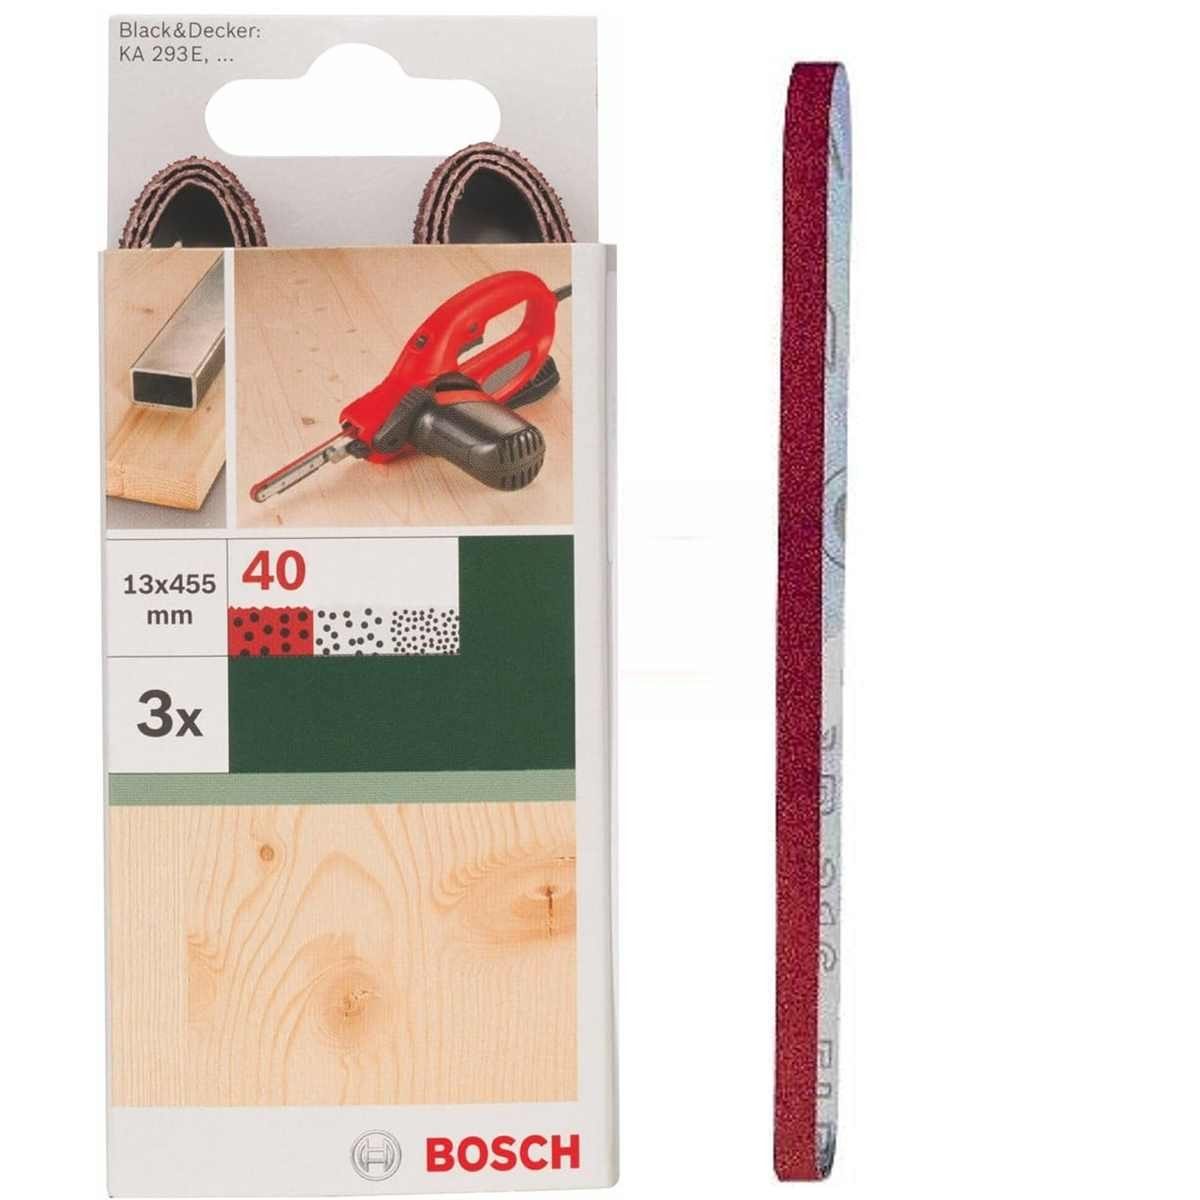 BOSCH Bohrfutter Bosch 3 Schleifbänder für B+D Powerfile KA 293E 13 x 451 mm, K 40